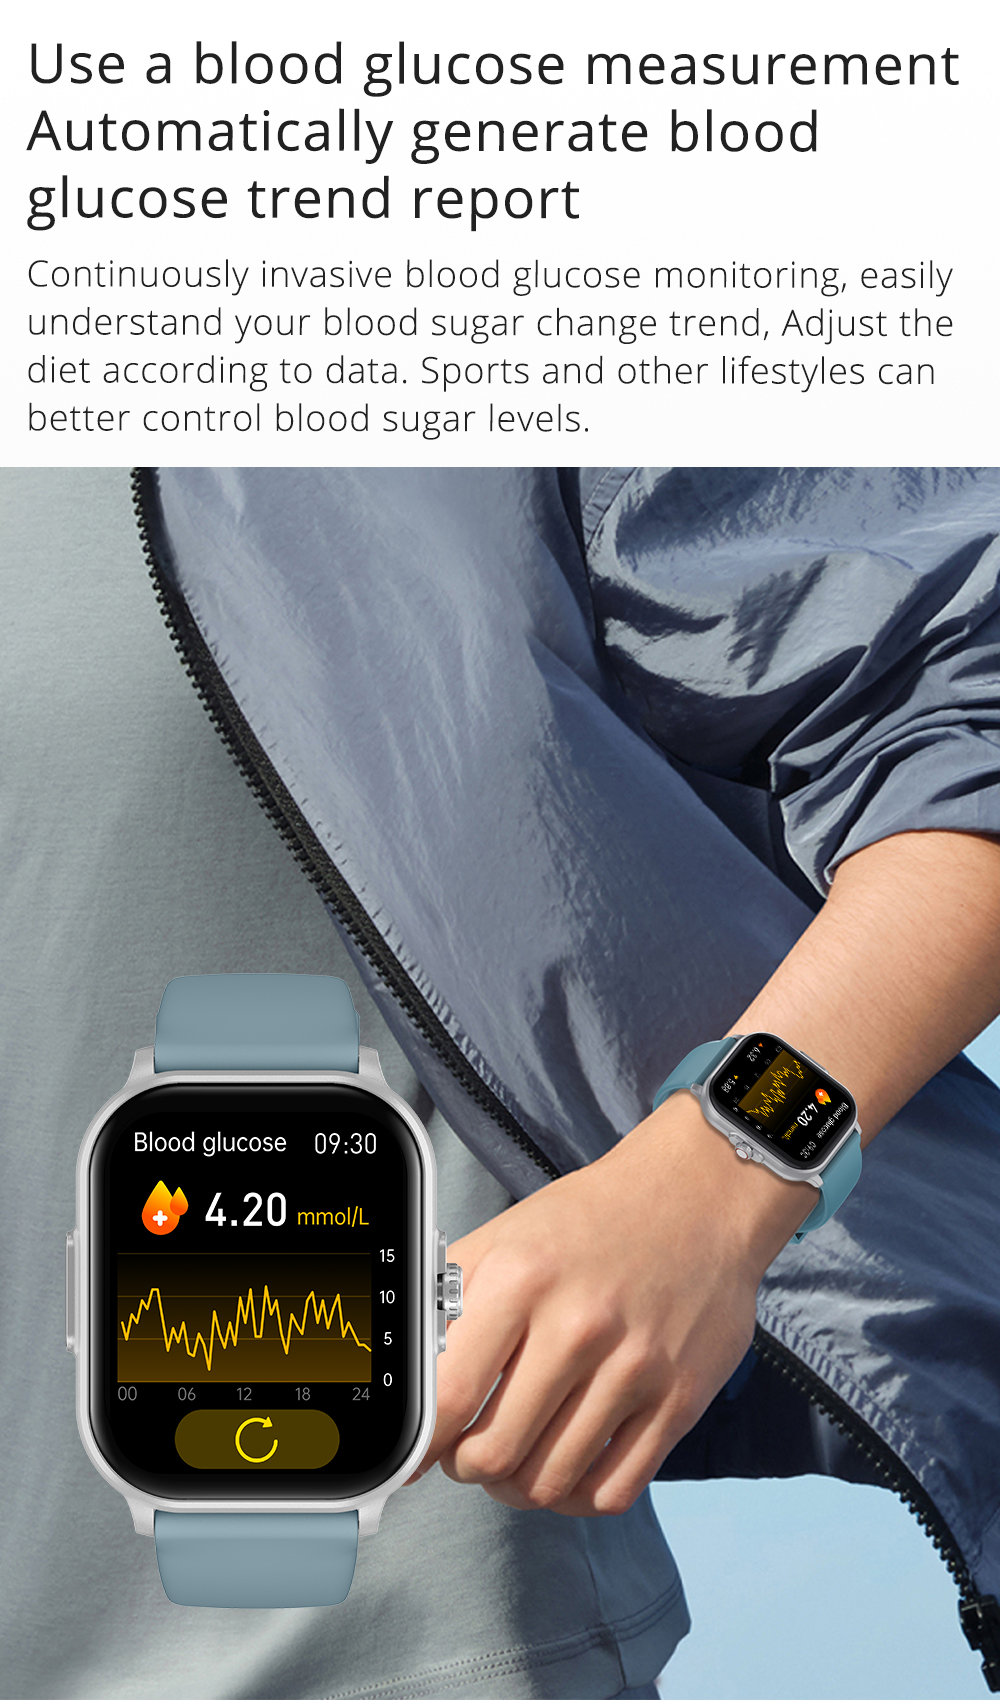 Venta al por mayor COLMI C63 Smartwatch 2.01 ″ Pantalla ECG Oxígeno en sangre  Glucosa en sangre Reloj inteligente para la salud.Fabricante y proveedor